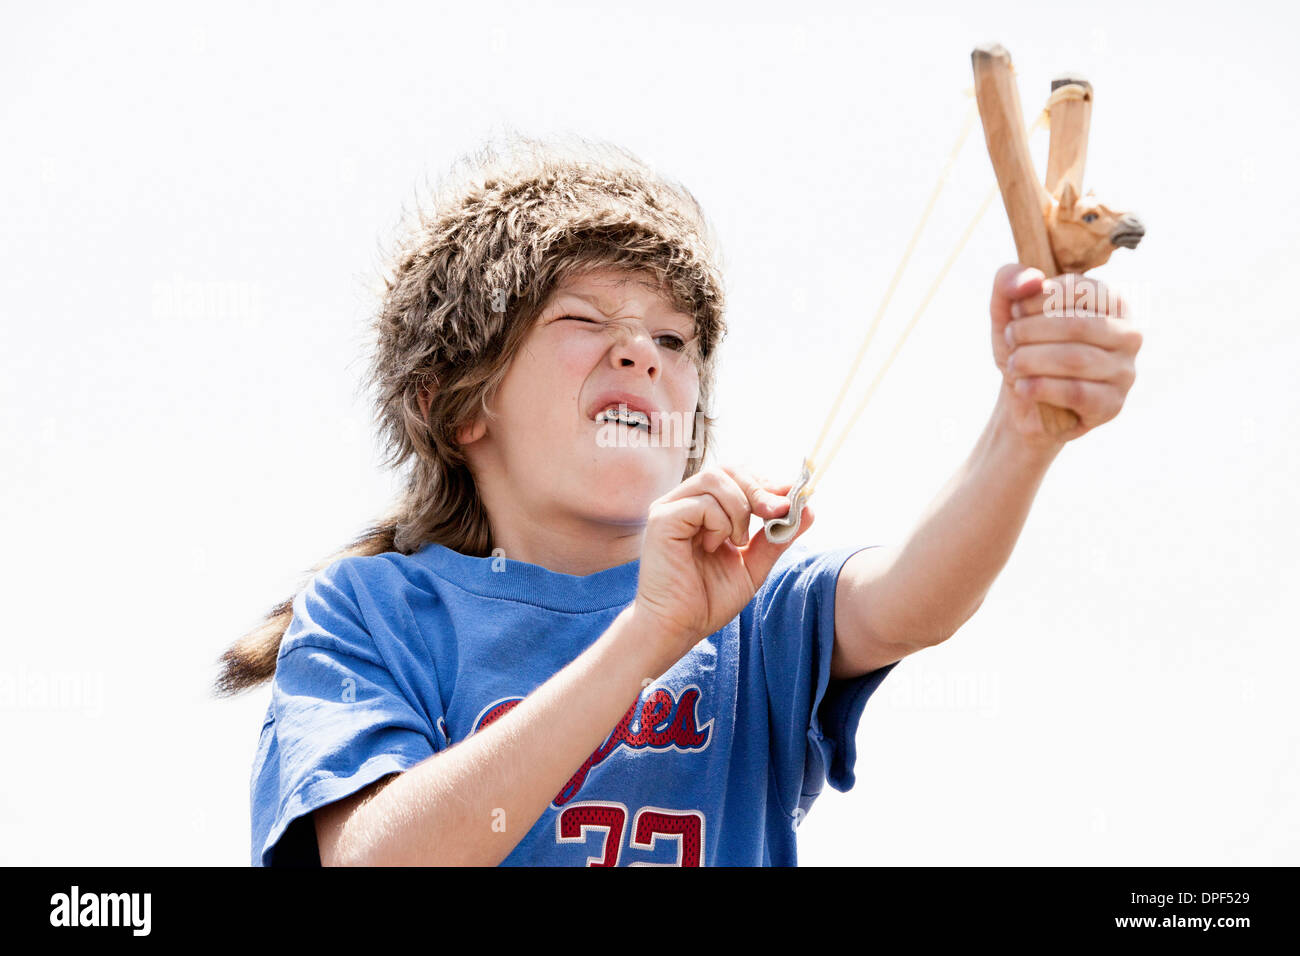 Junge Trapper Hut mit Sling shot spielen Stockfoto